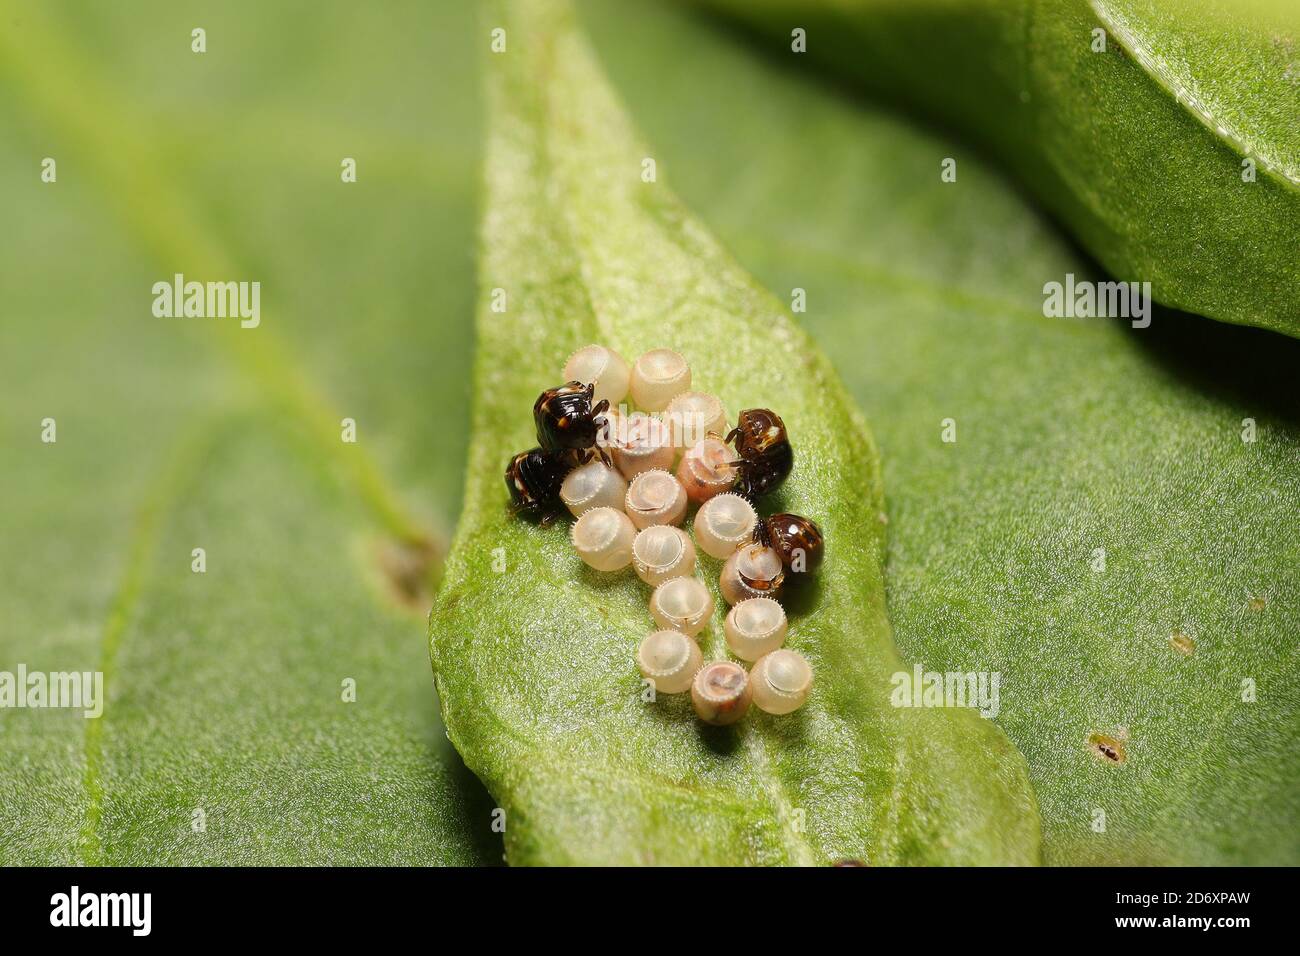 De minuscules insectes de bouclier qui viennent d'être éclos. Banque D'Images